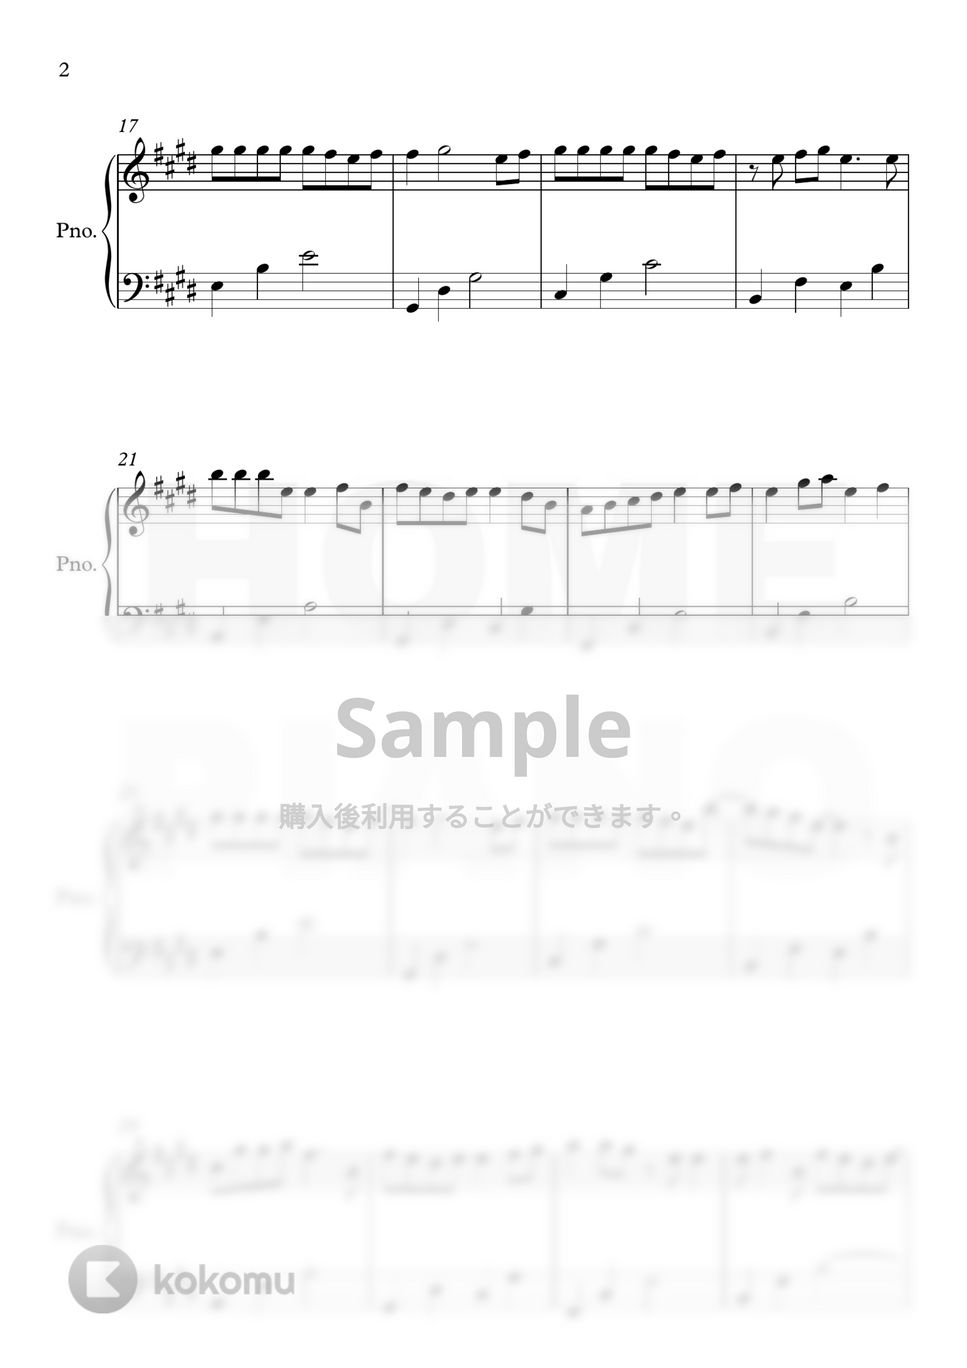 チョン・サングン - 愛というメロはない (初級) by HOME PIANO